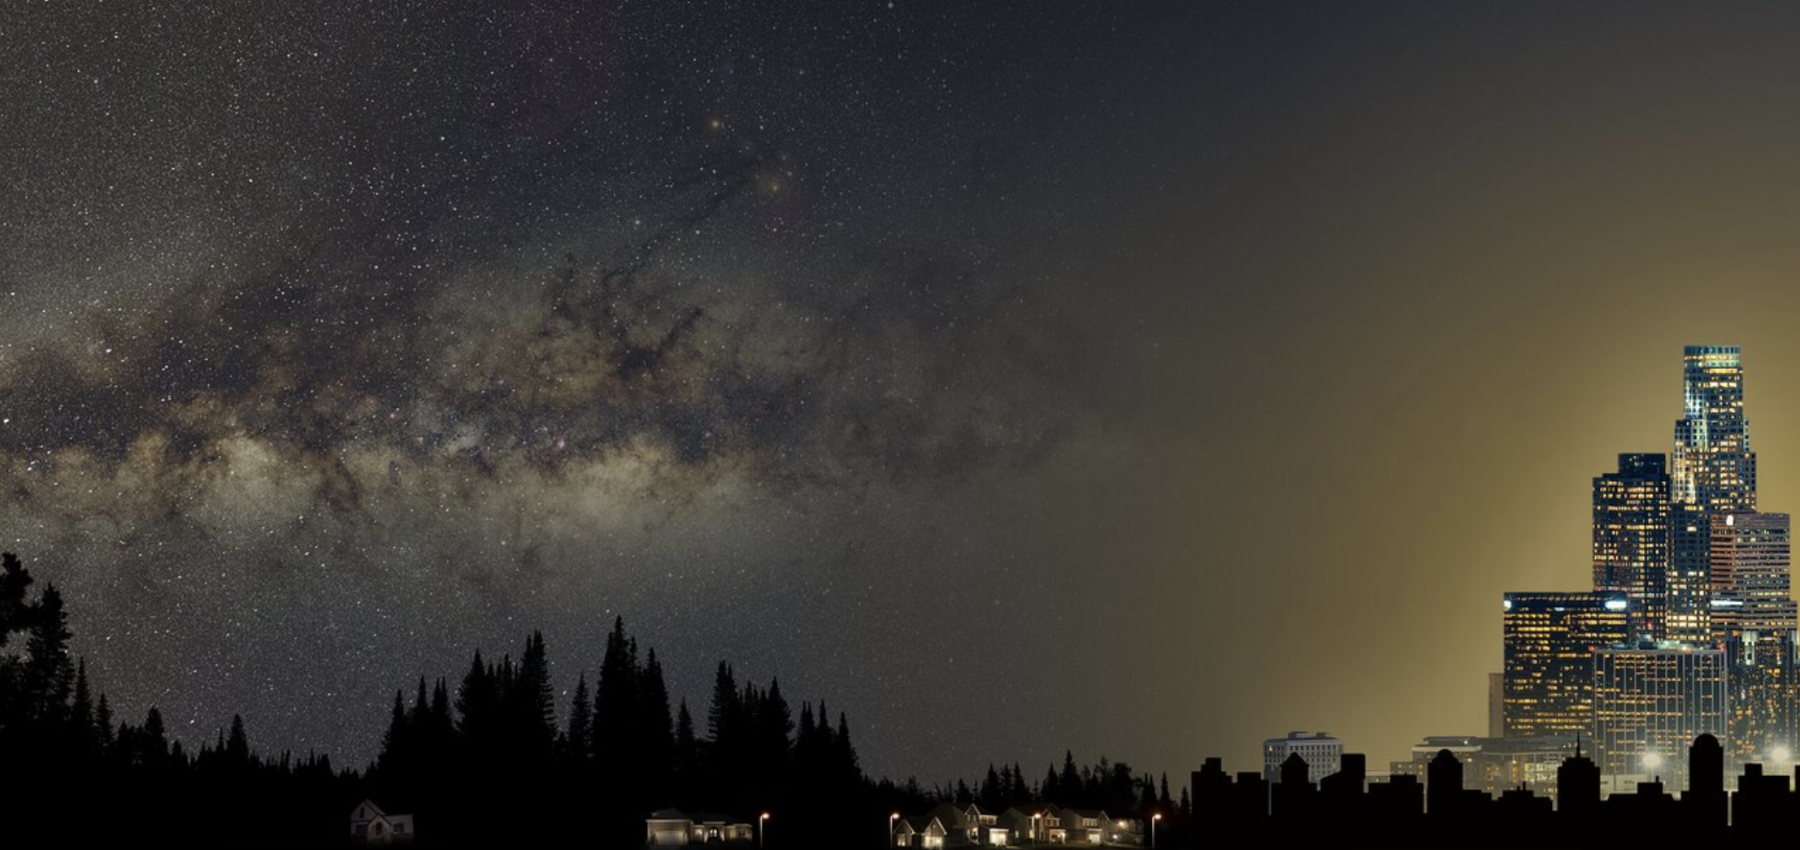 Будущие поколения увидят на небе меньше звезд из-за светового загрязнения